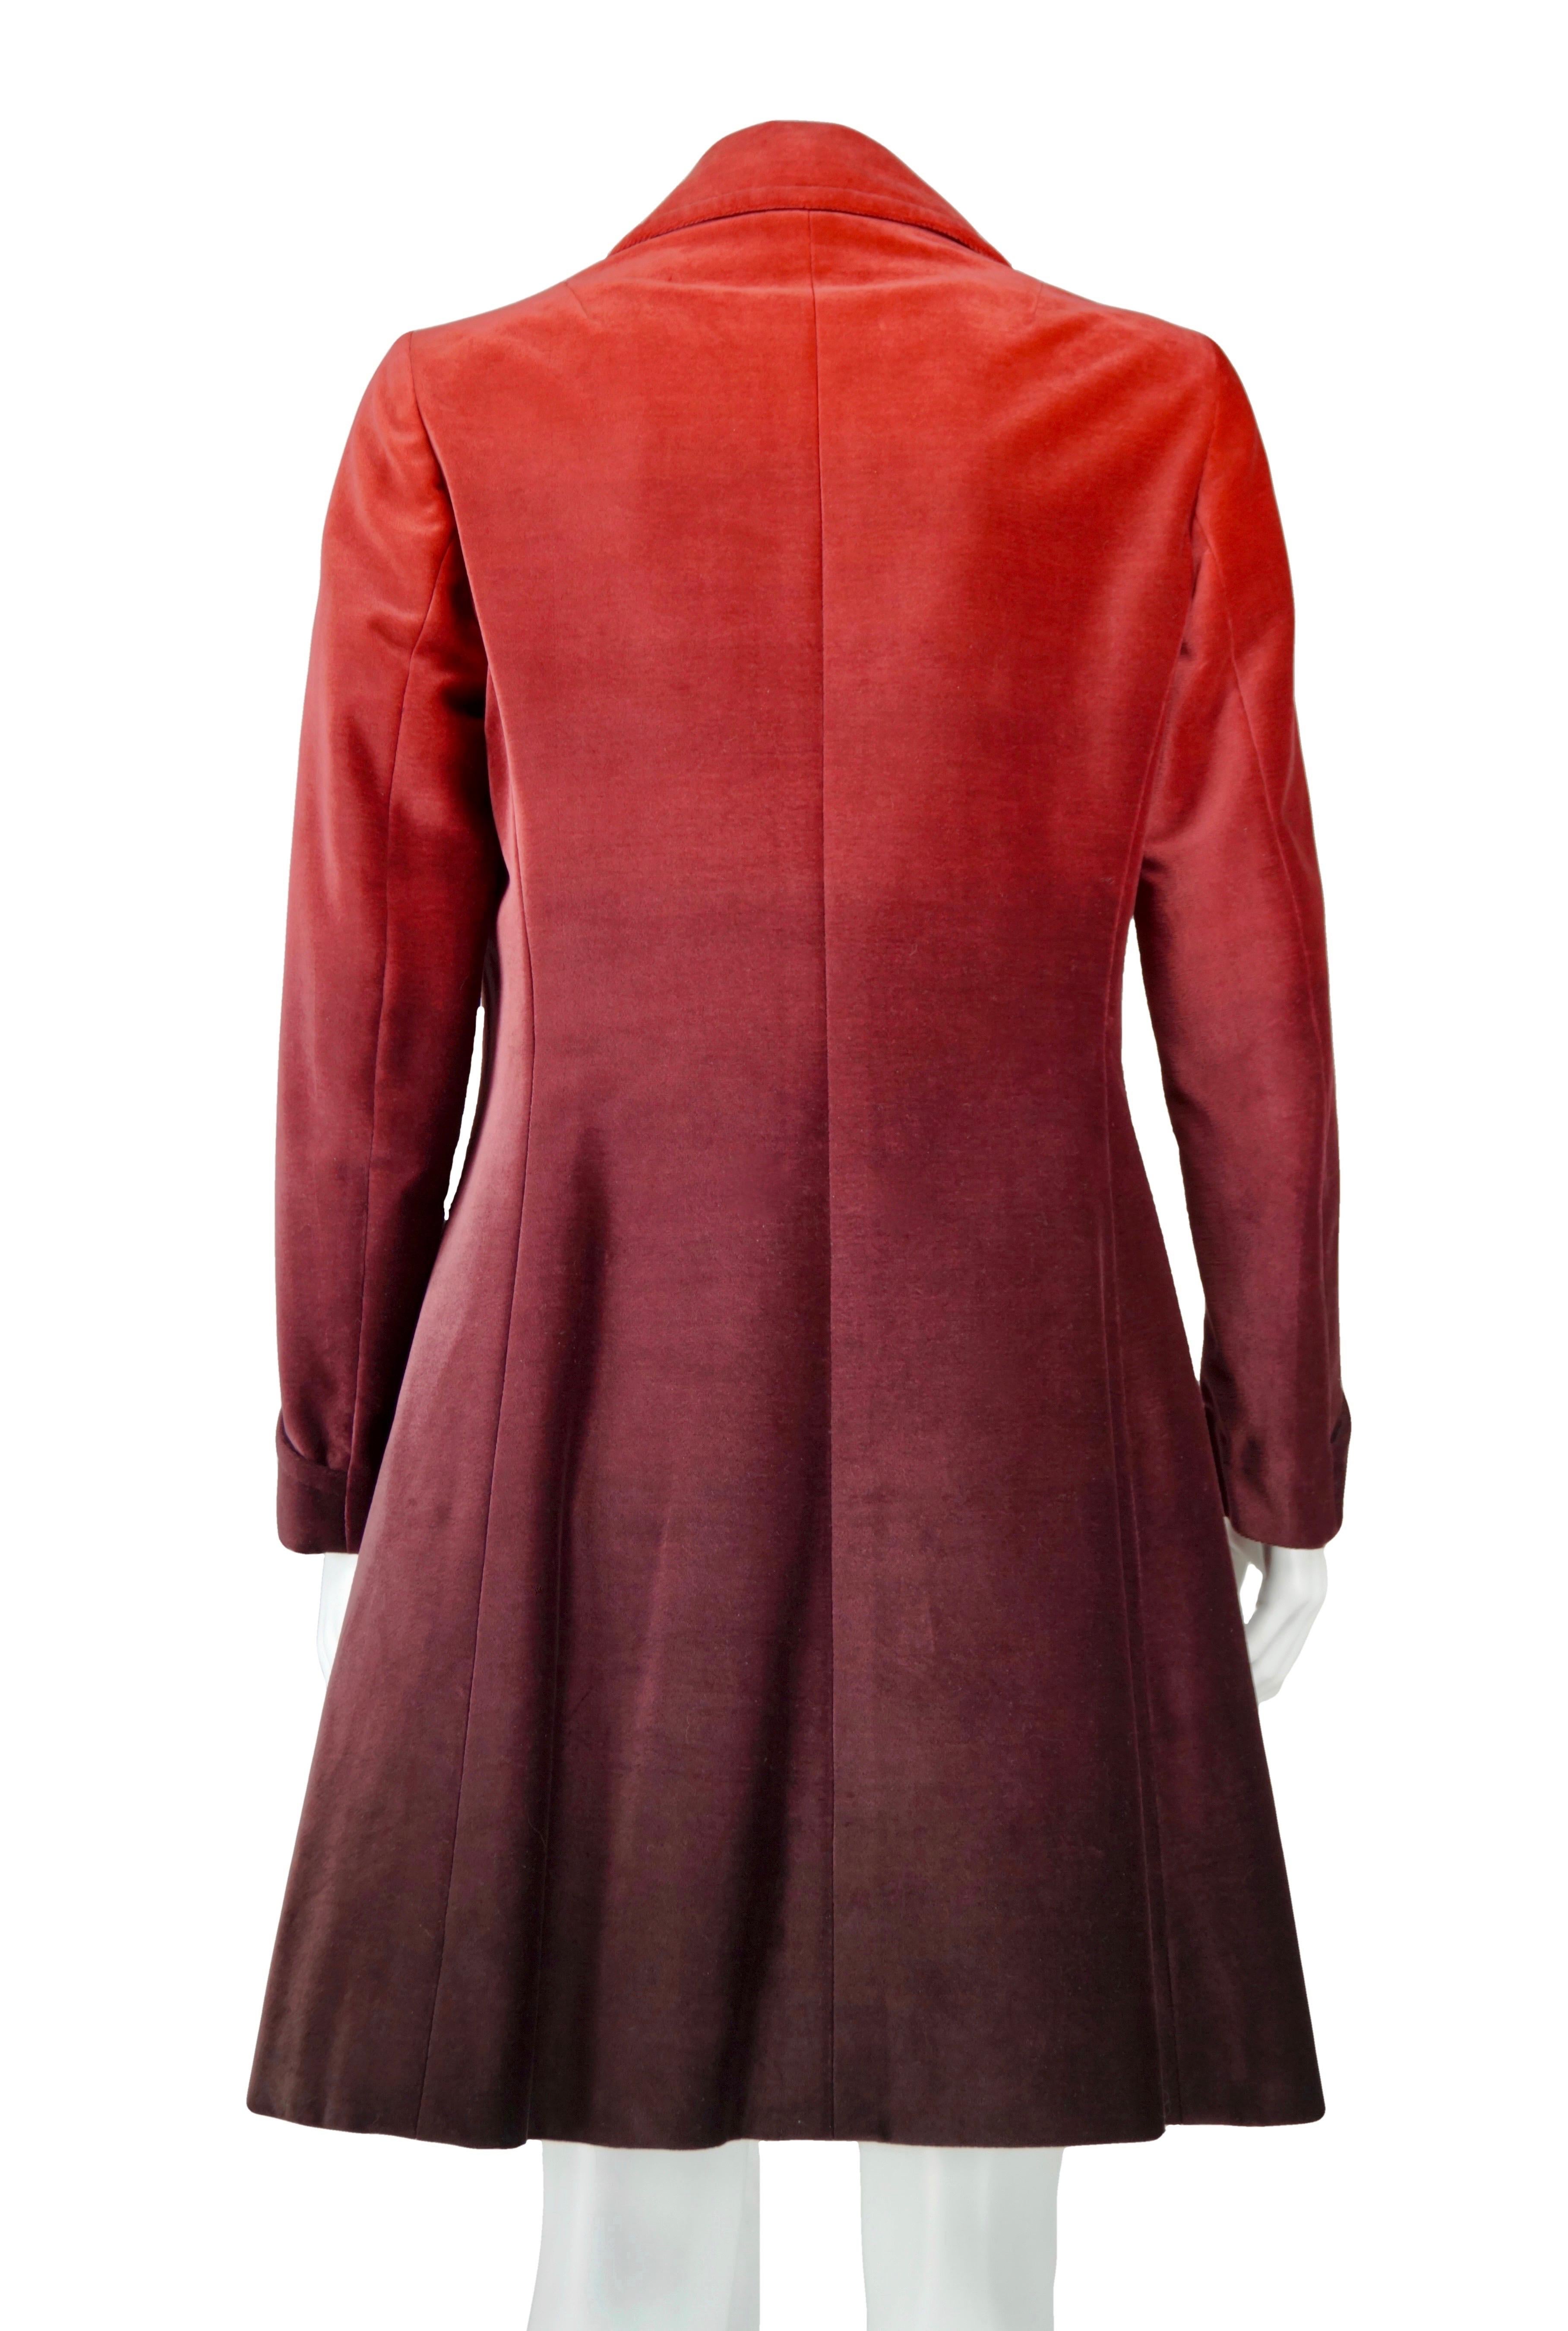 Roberta di Camerino - Manteau rouge en velours vintage, années 70 Bon état - En vente à Rubiera, RE